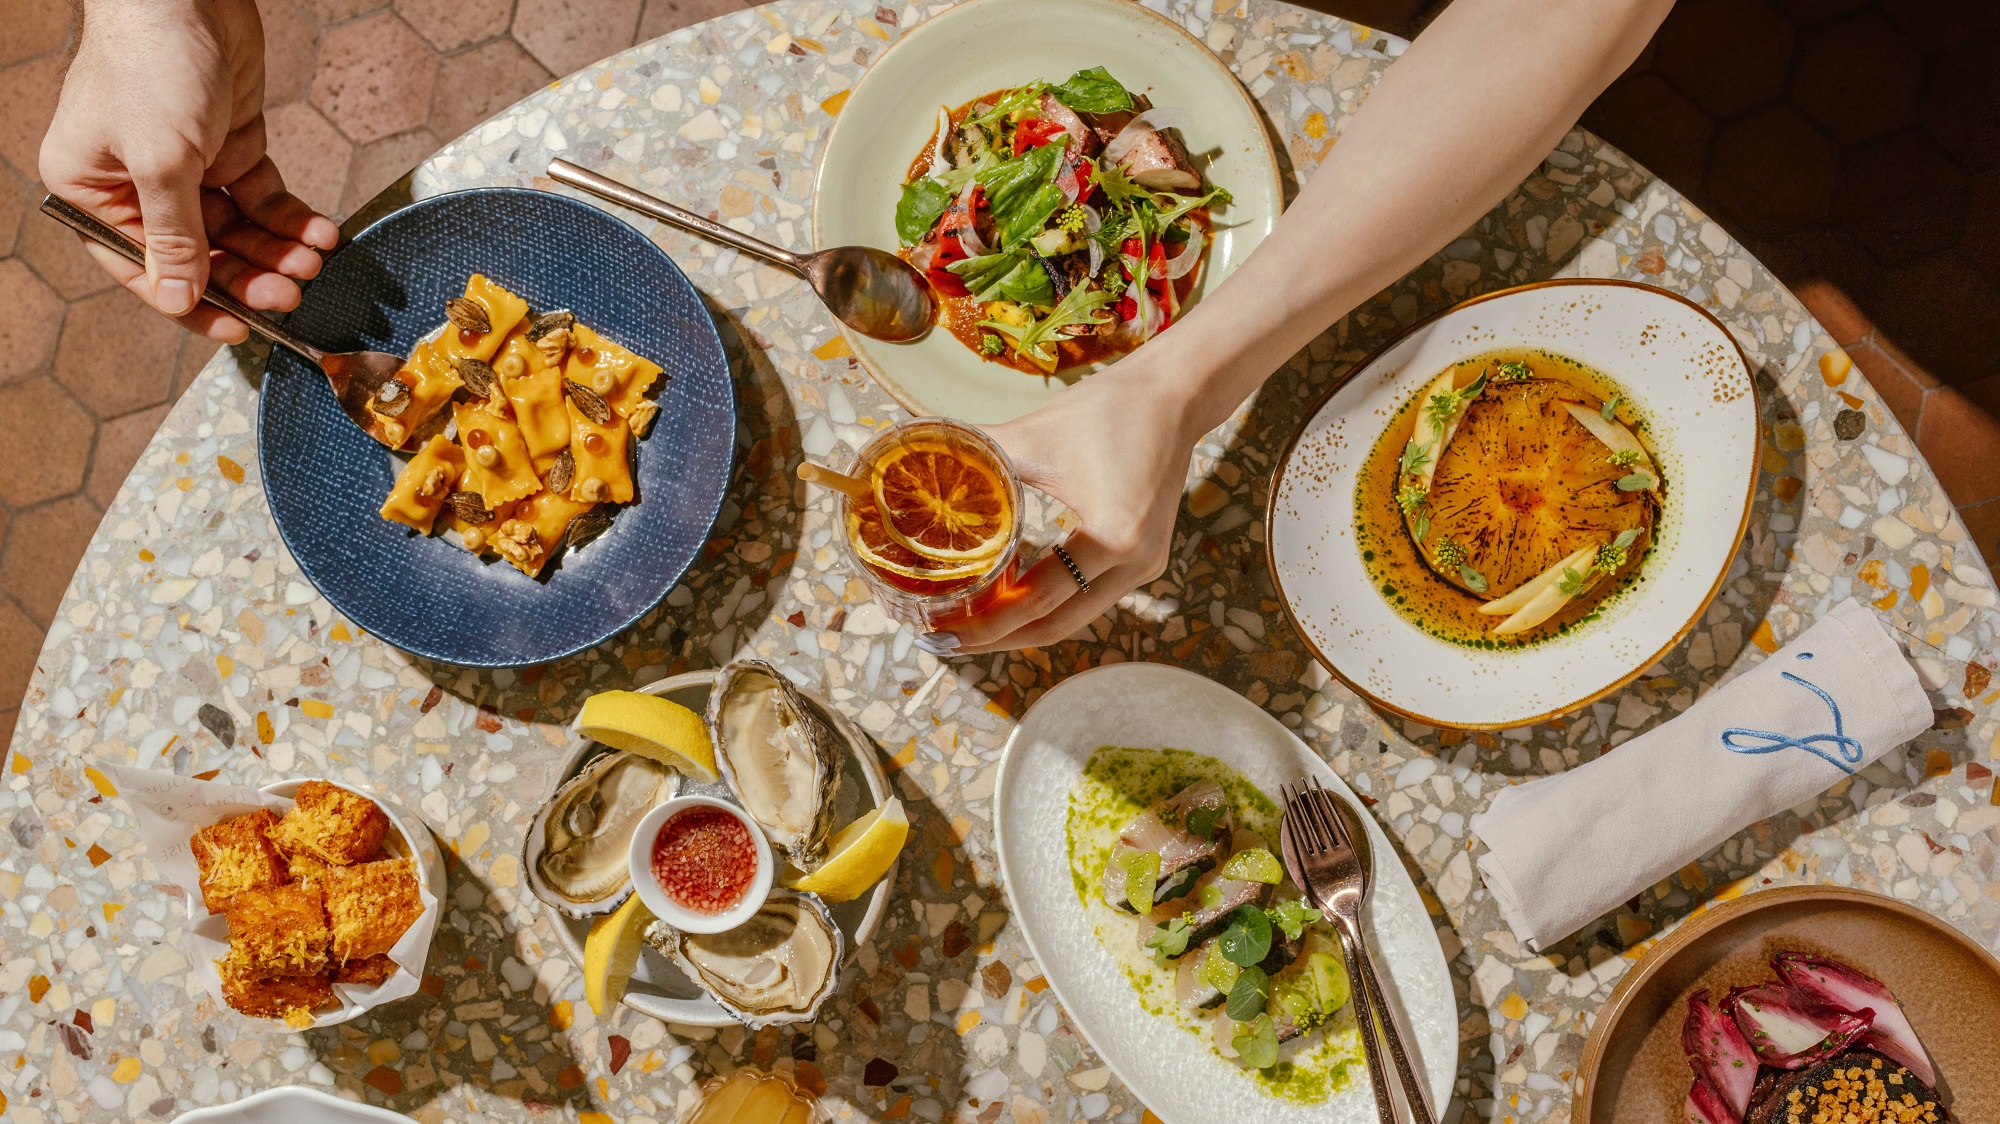 【美食】法式花園酒廊餐廳 享受休閒用餐體驗